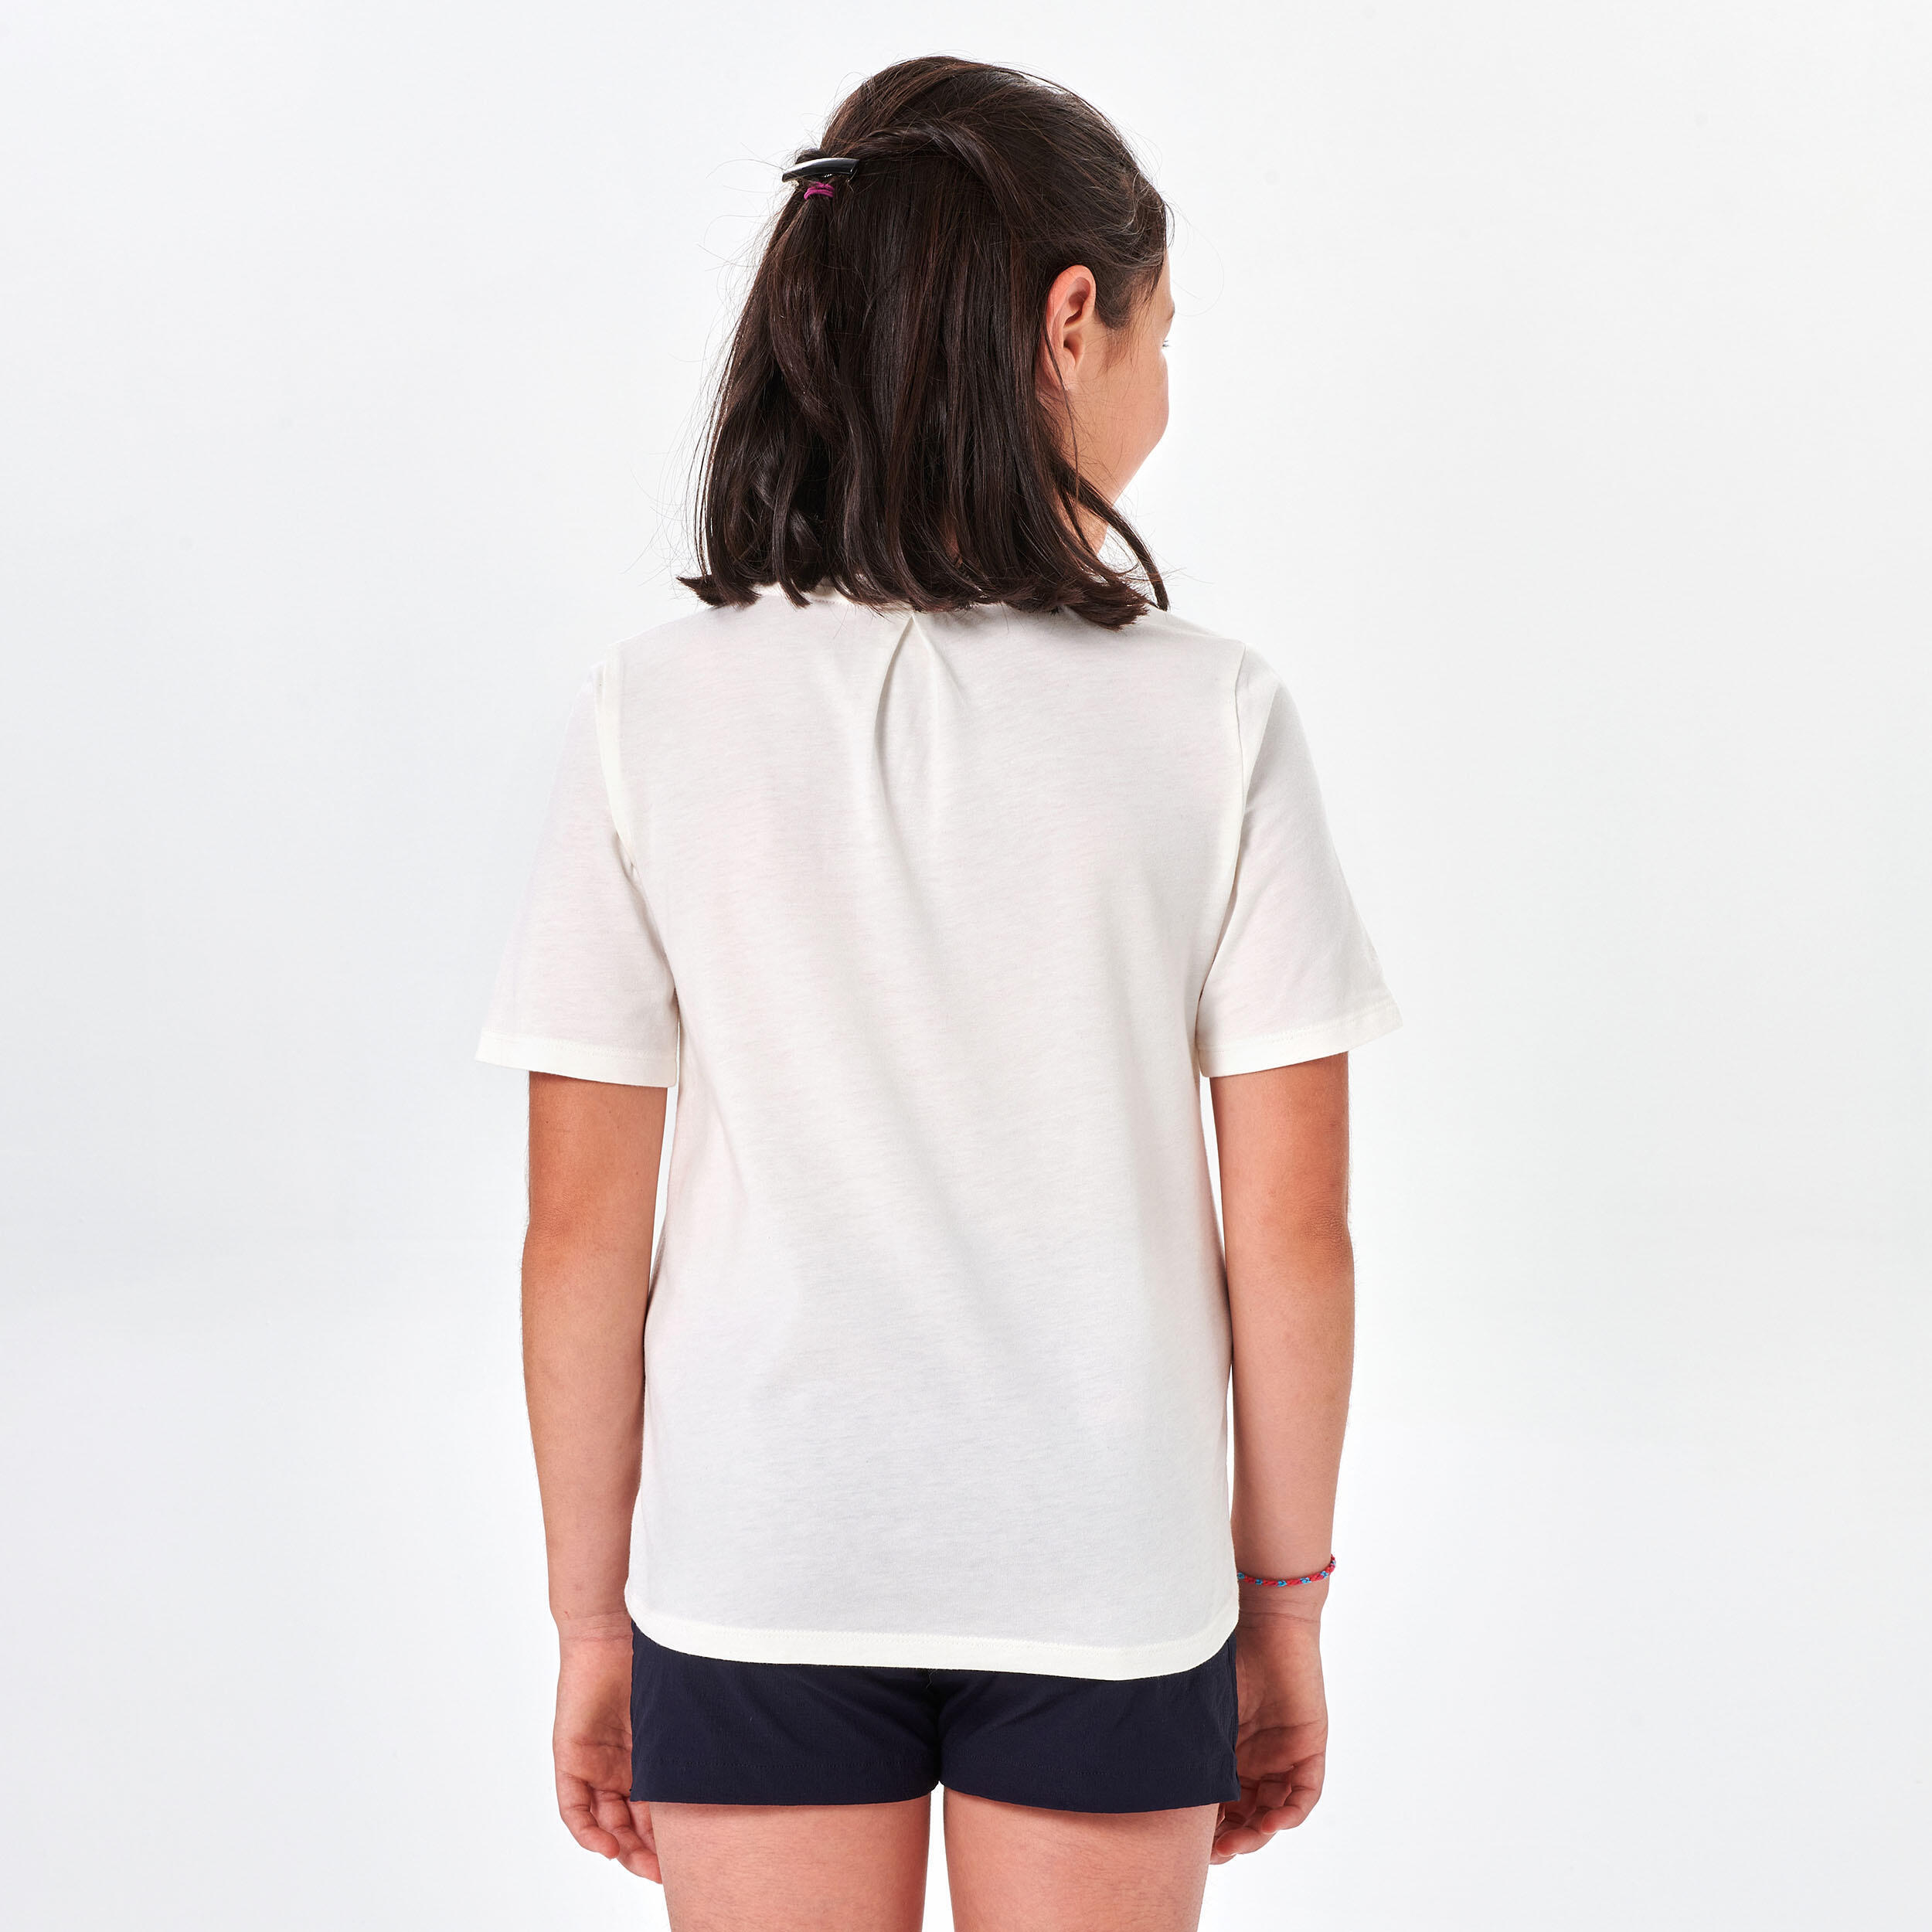 Kids' Hiking T-shirt MH100 7-15 Years - White 3/6